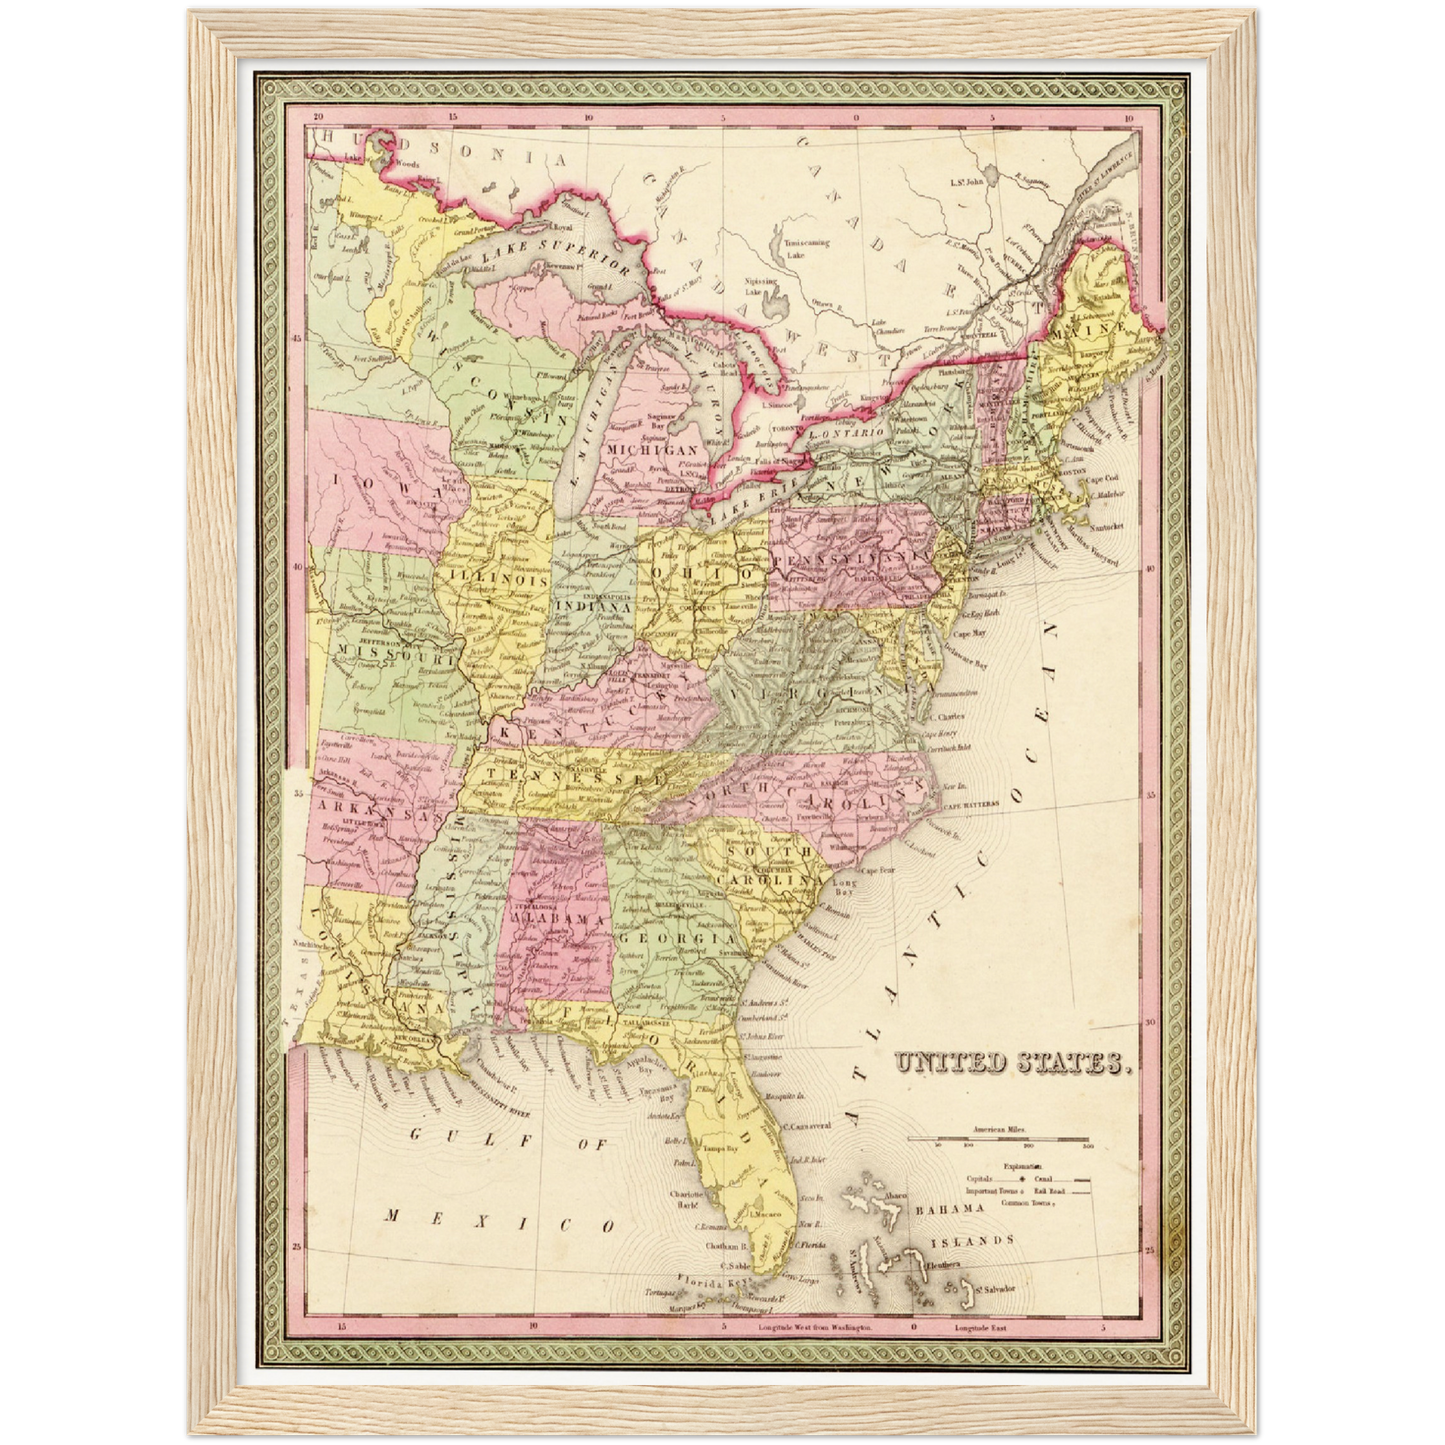 Historische Landkarte USA um 1849